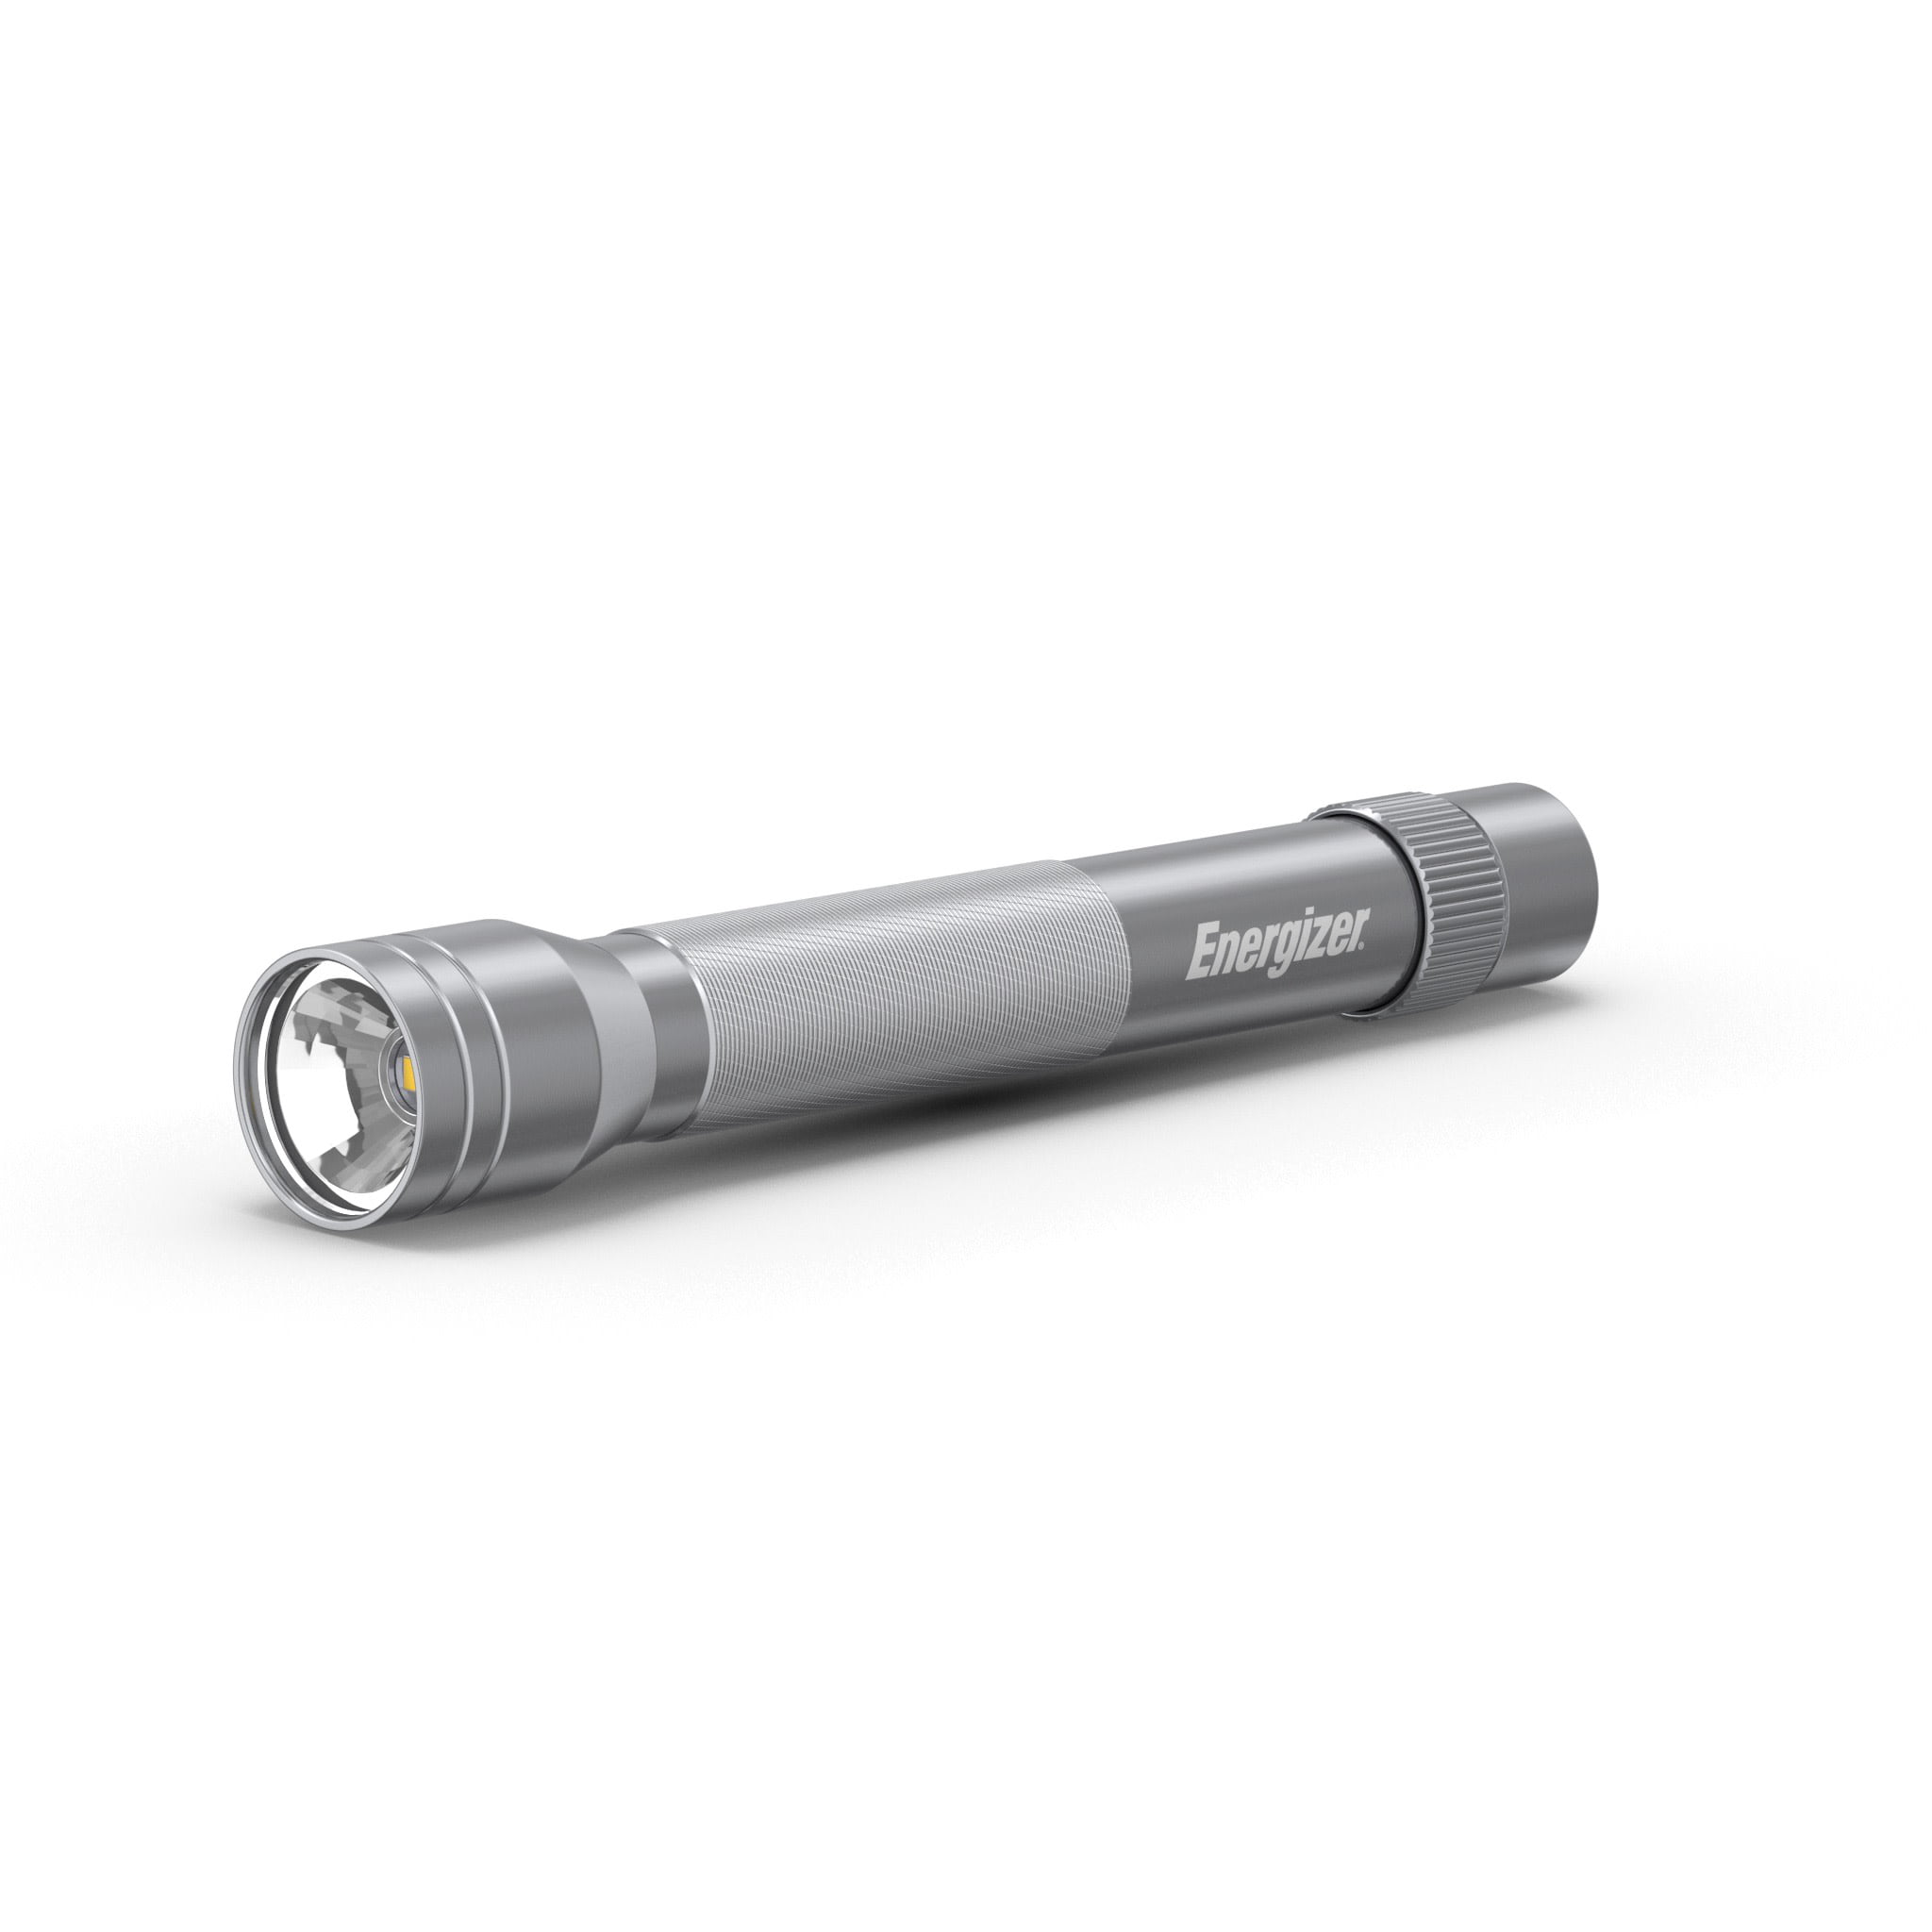 2 x AA Energizer Taschenlampe Metal Light LED inkl 50 Lumen 36m Reichweite 